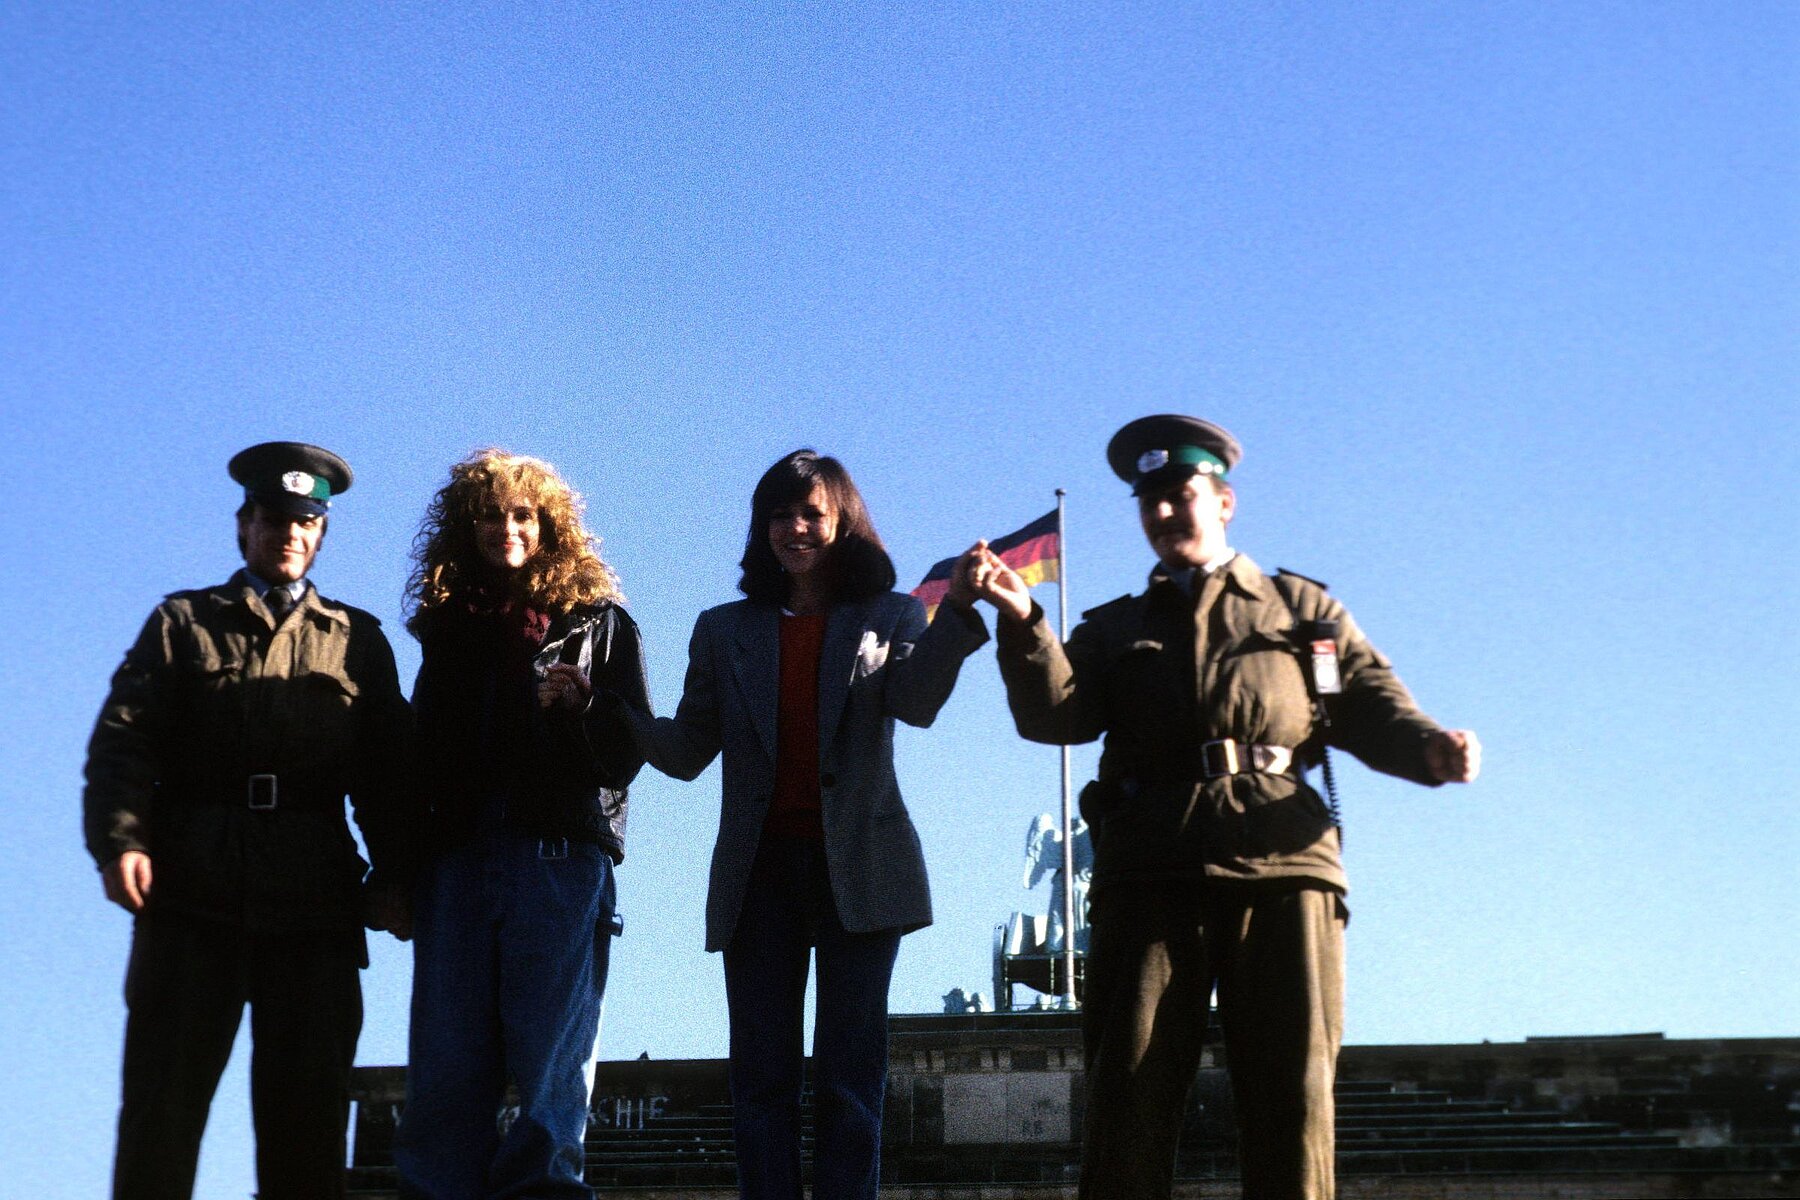 Die Schauspielerinnen Julia Roberts und Sally Field posieren mit DDR-Grenzsoldaten auf der Panzermauer am Brandenburger Tor.